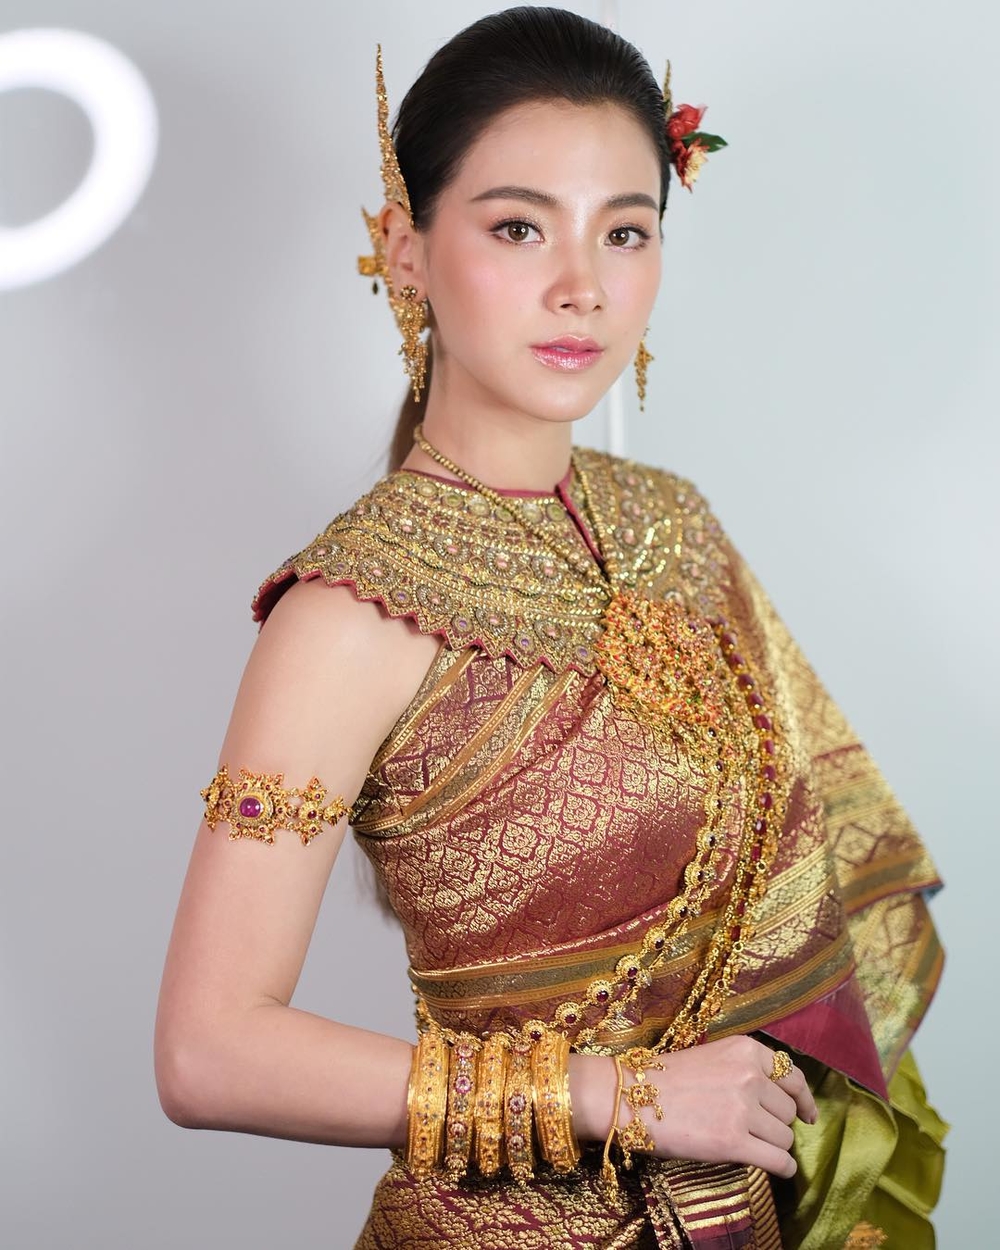 Loạt mỹ nhân Thái xinh đẹp trong trang phục truyền thống